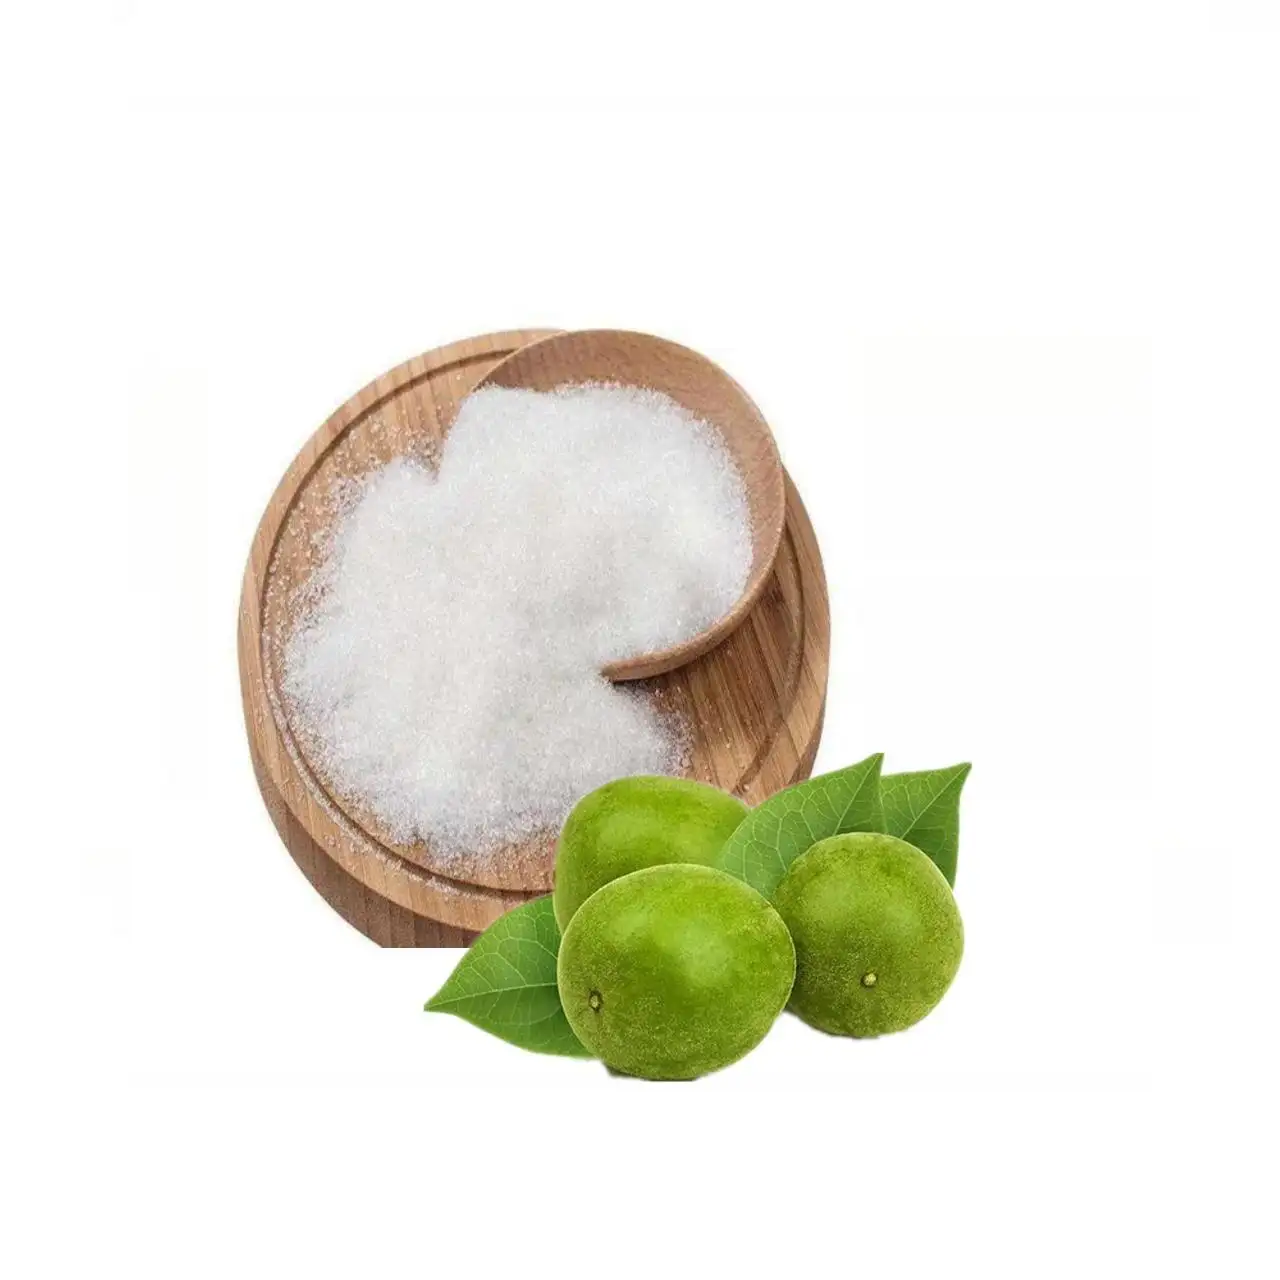 Schnelle Lieferung Bulk Bio Mönch Frucht Allulose/Stevia Erythrit/Allulose Keto Süßstoff